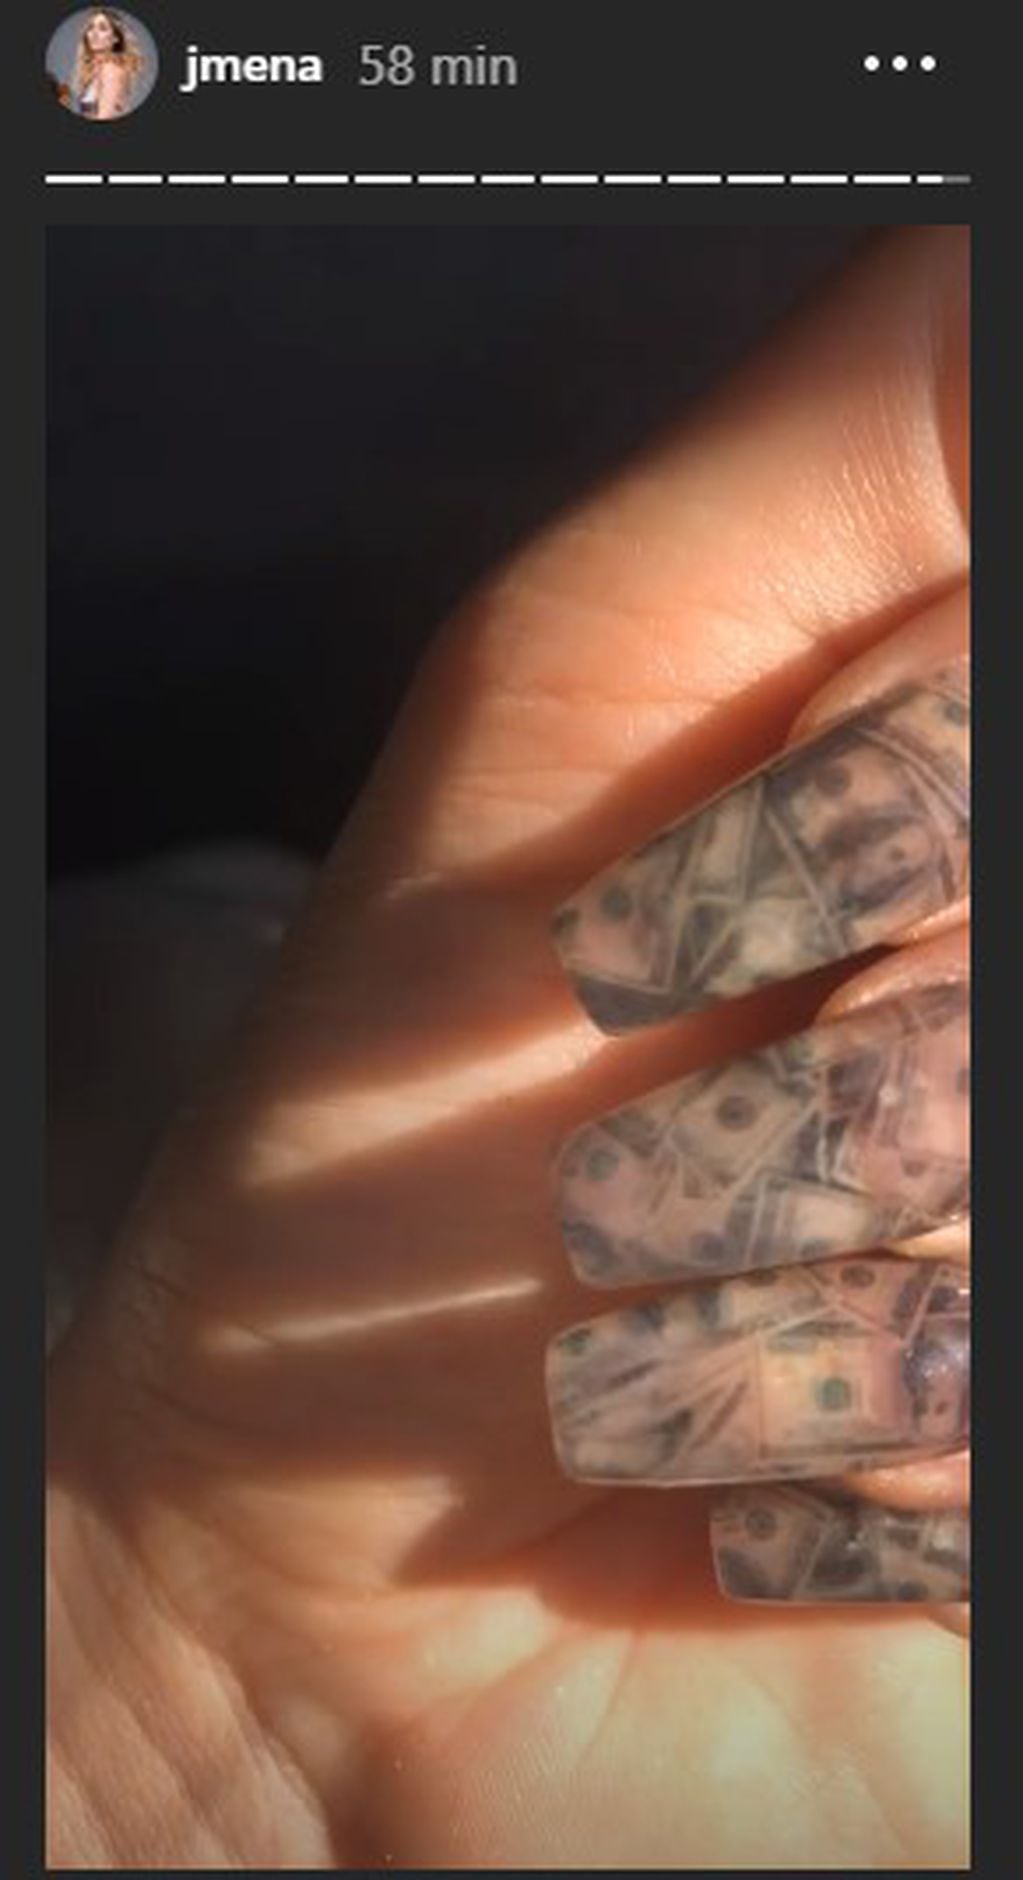 Jimena Barón se decoró las uñas con "millones de dólares", ¿será un buen augurio? (Foto: Instagram/ @jmena)